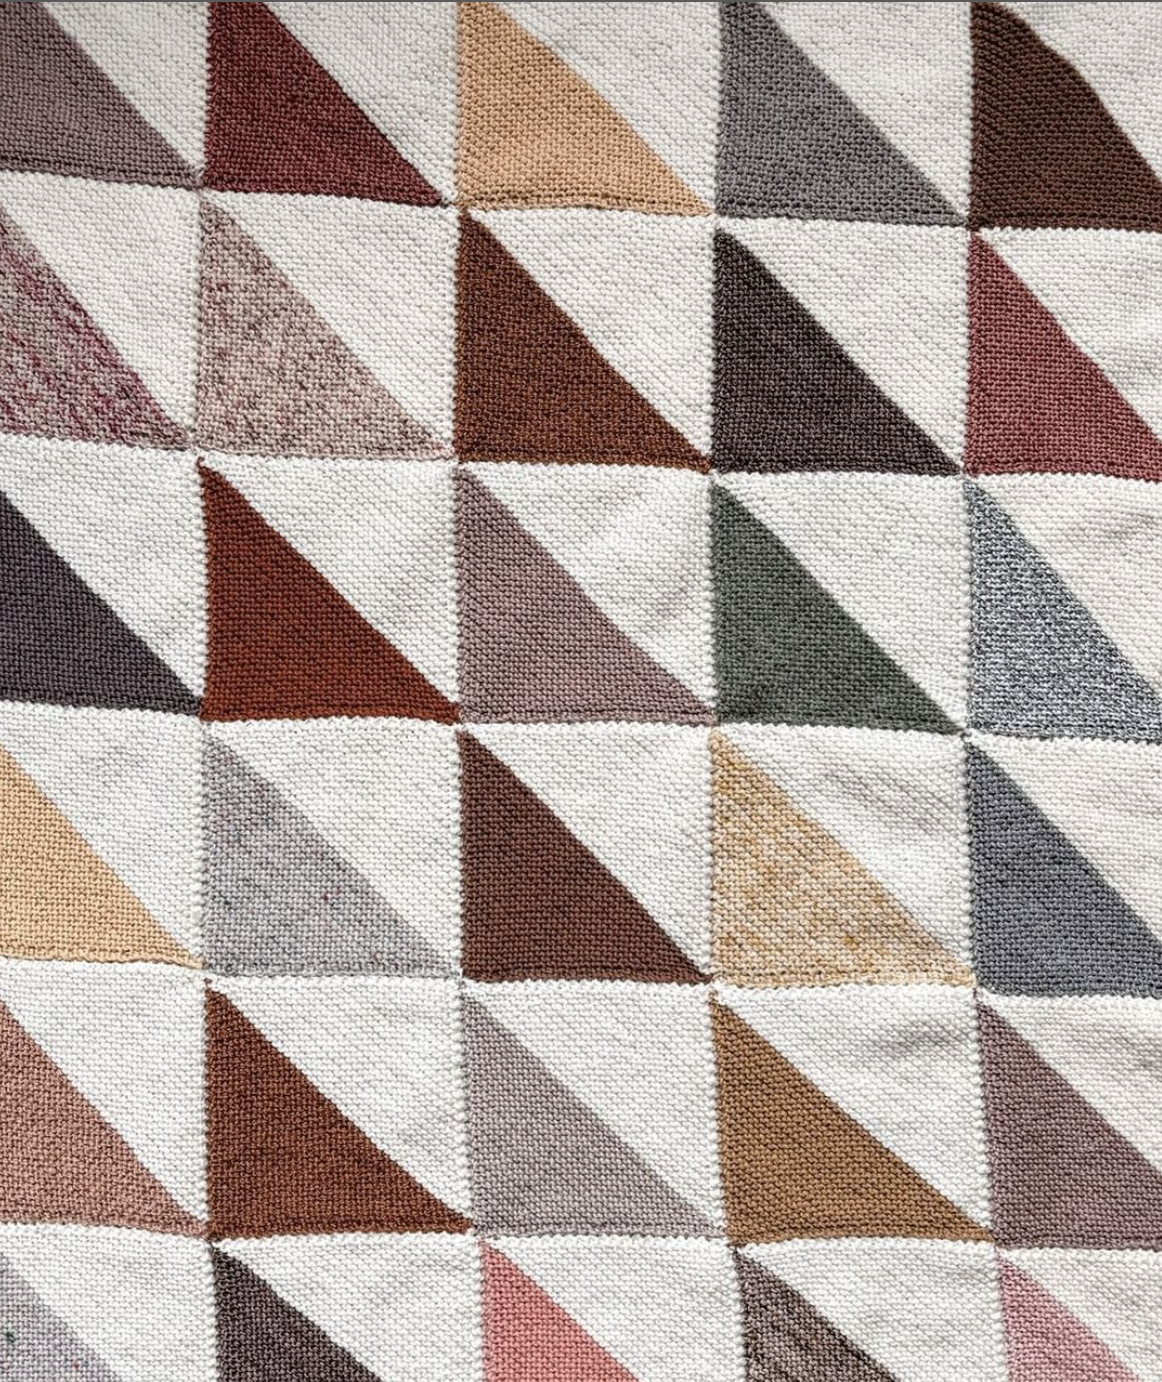 geometric hand knit blanket in earthy tones